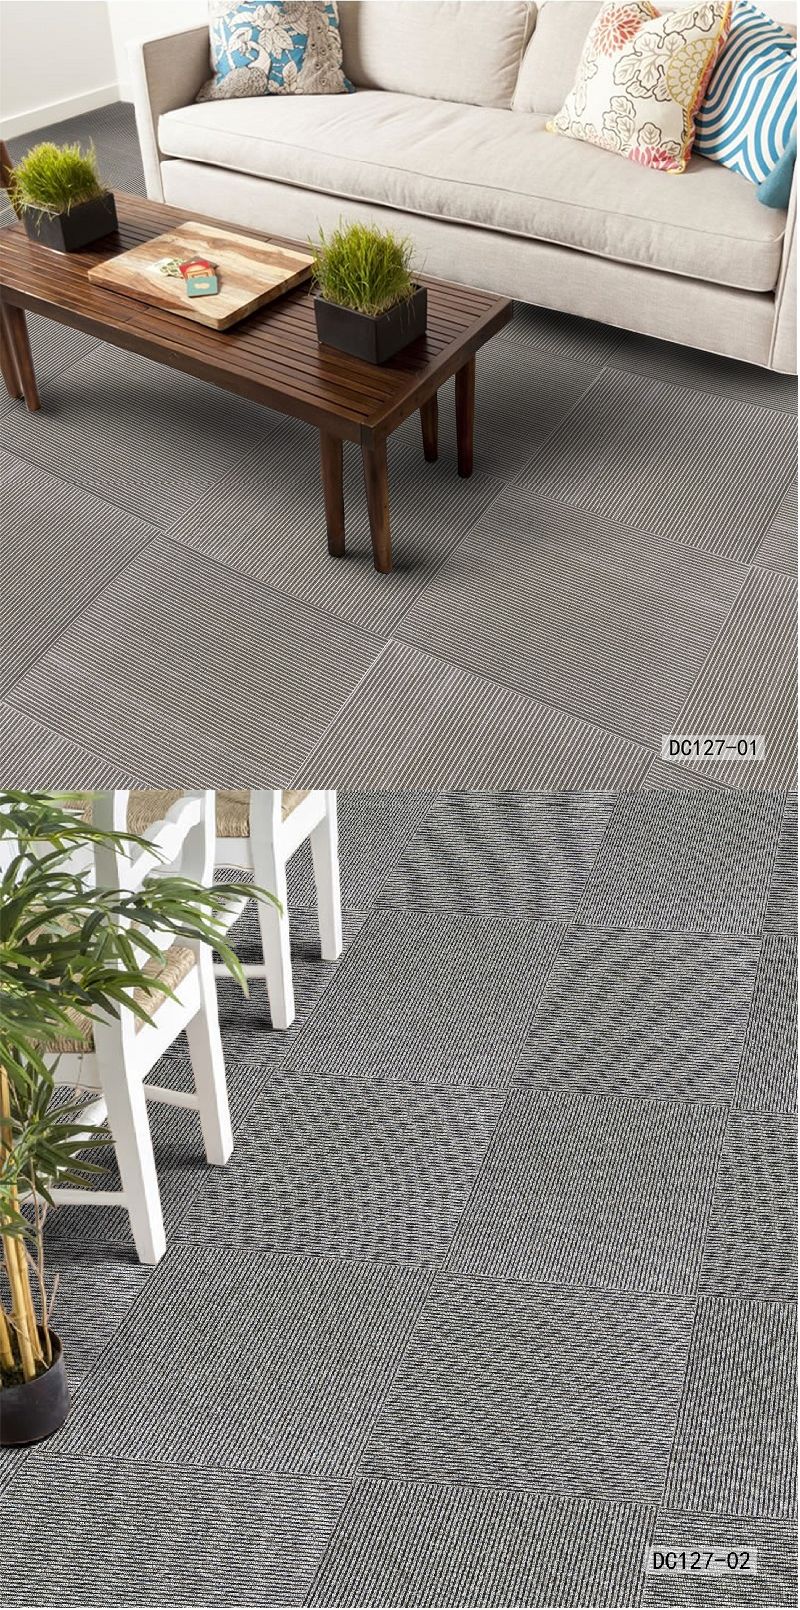 DC127 Loop Pile Commercial Hotel Home Office Carpet Tiles Nylon Pet PP Modern Carpet PP Surface Bitumen Backing Modular Carpet